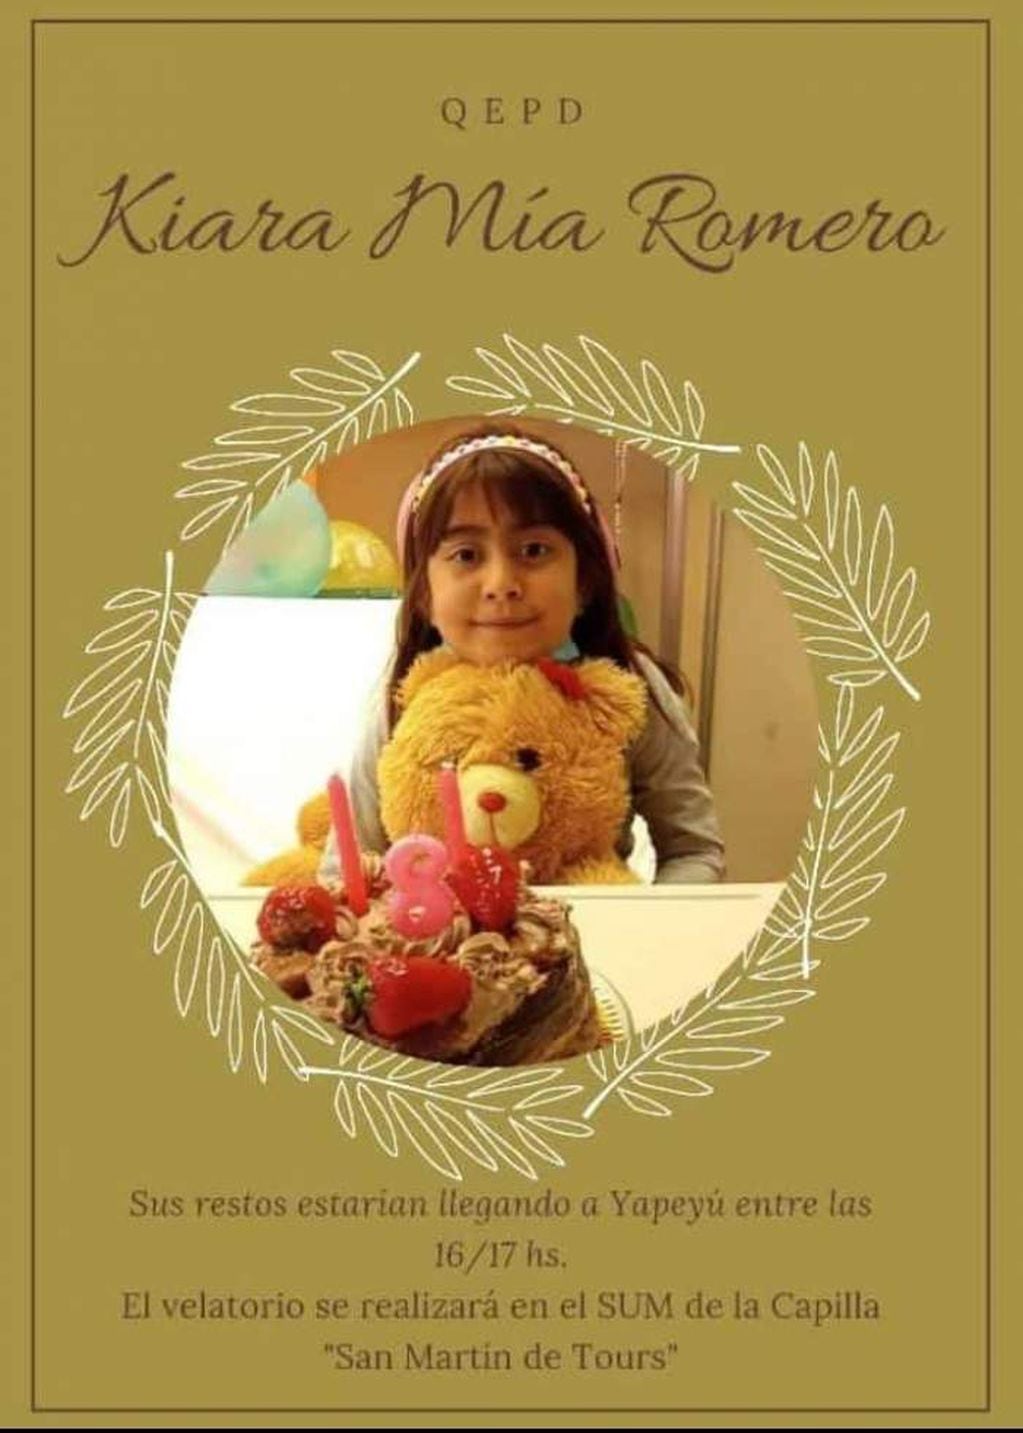 Los restos de Kiara serán velados en Corrientes.